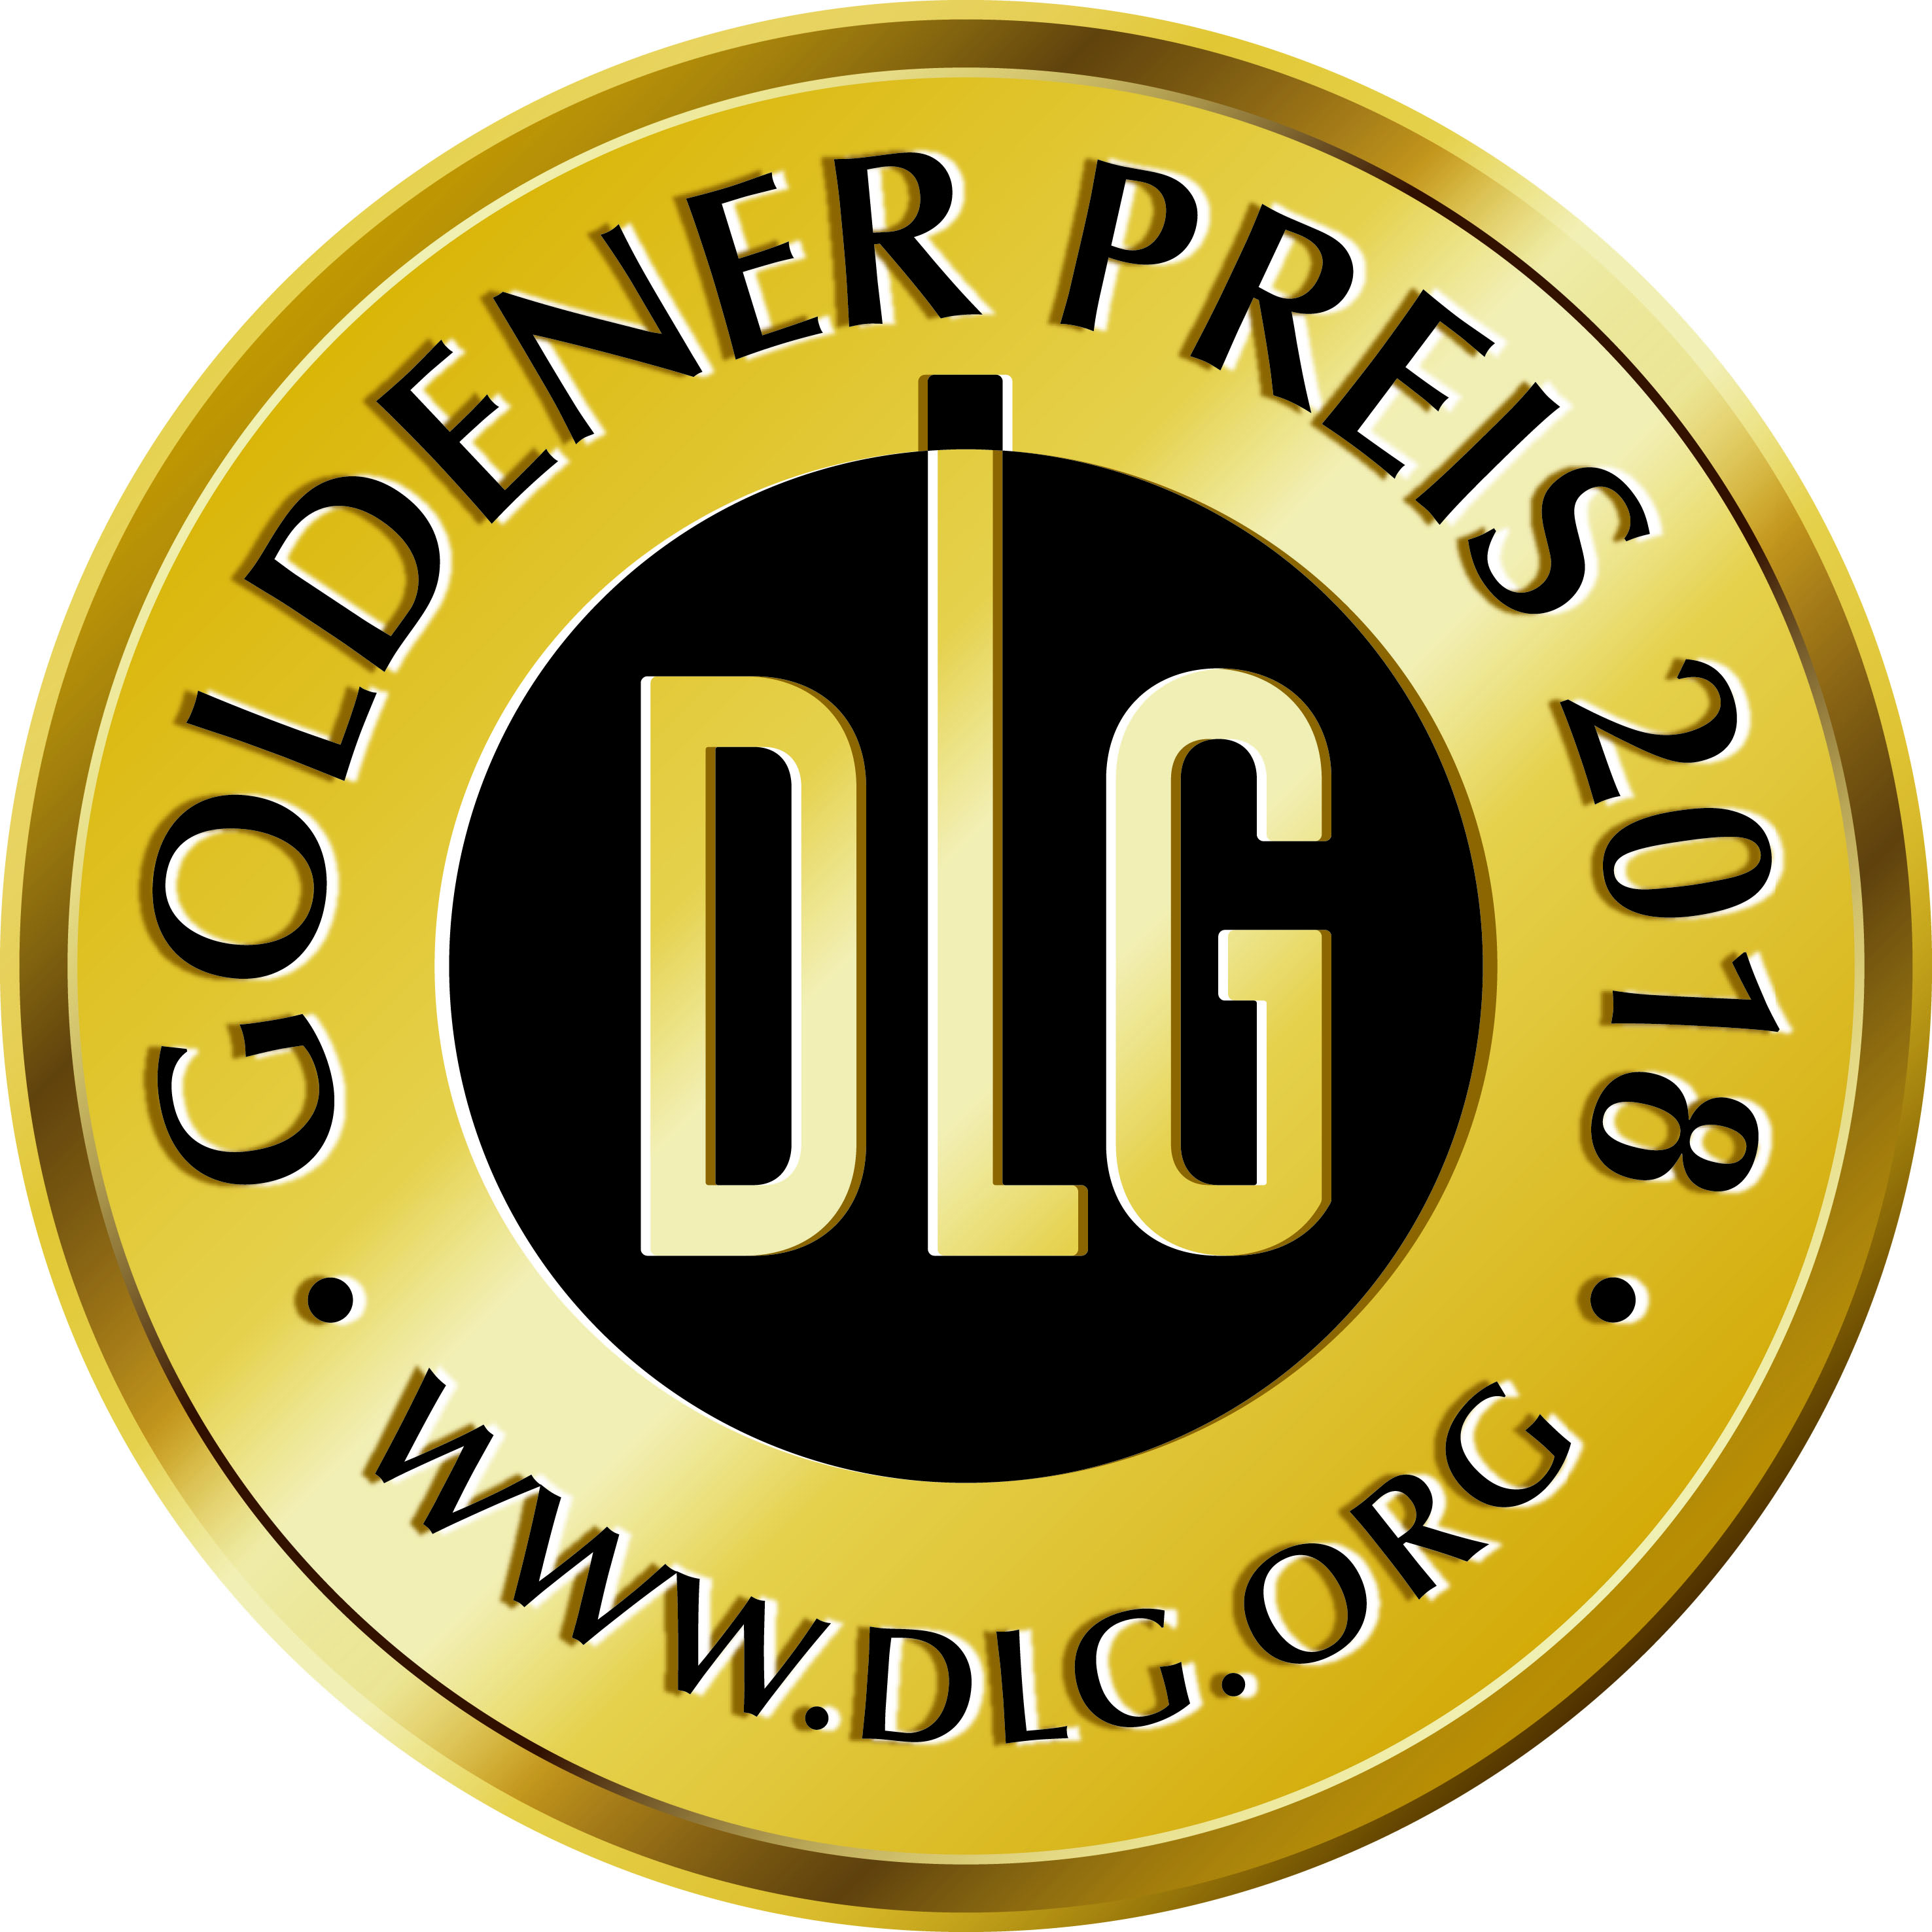 DLG Gold Medal 2018.jpg